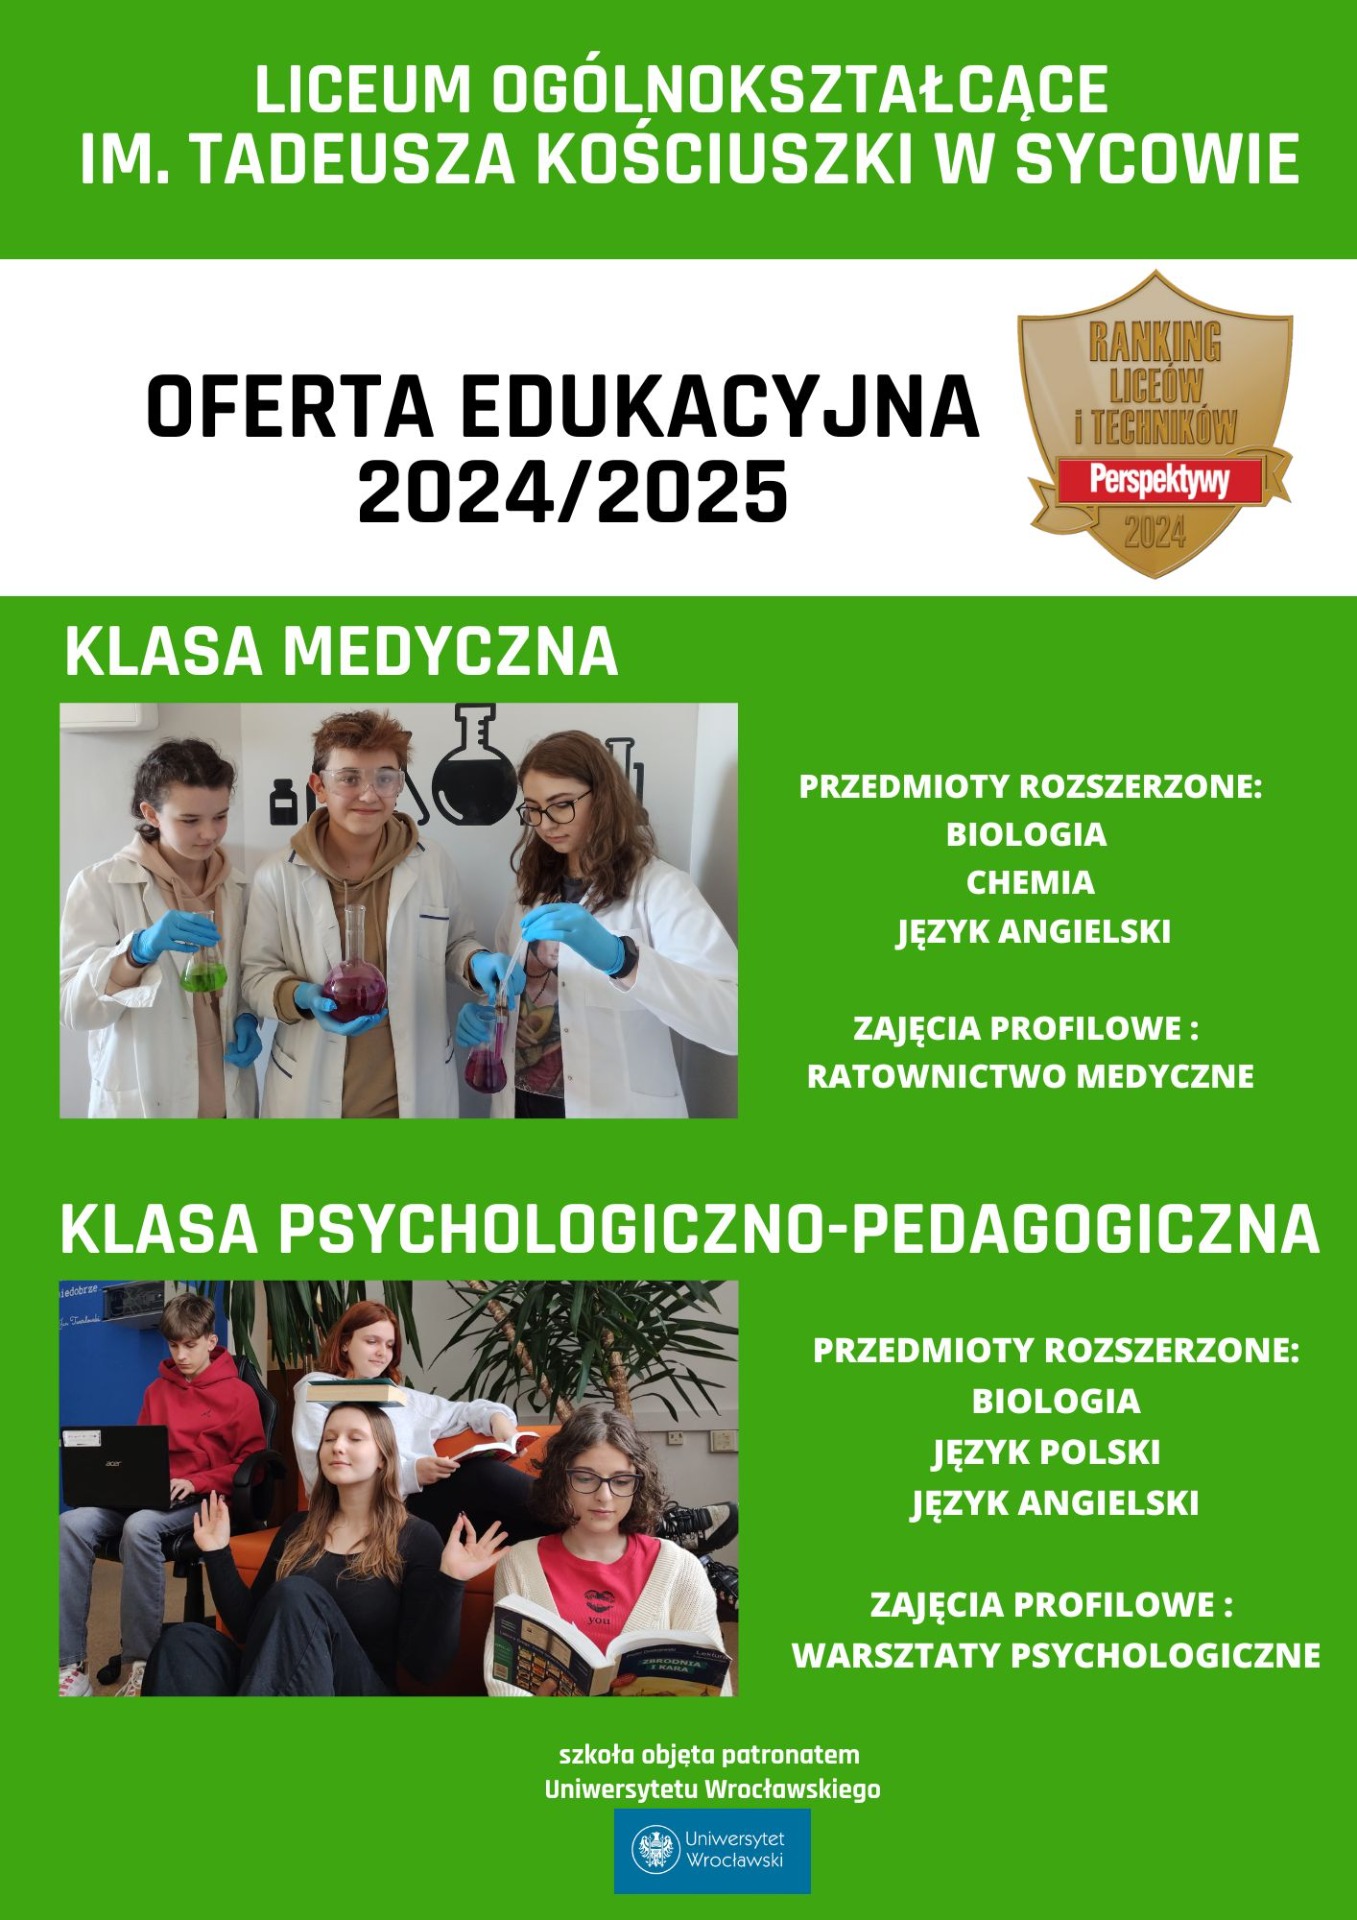 Oferta Edukacyjna Liceum Ogólnokształcące w Sycowie.🏫 - Obrazek 2